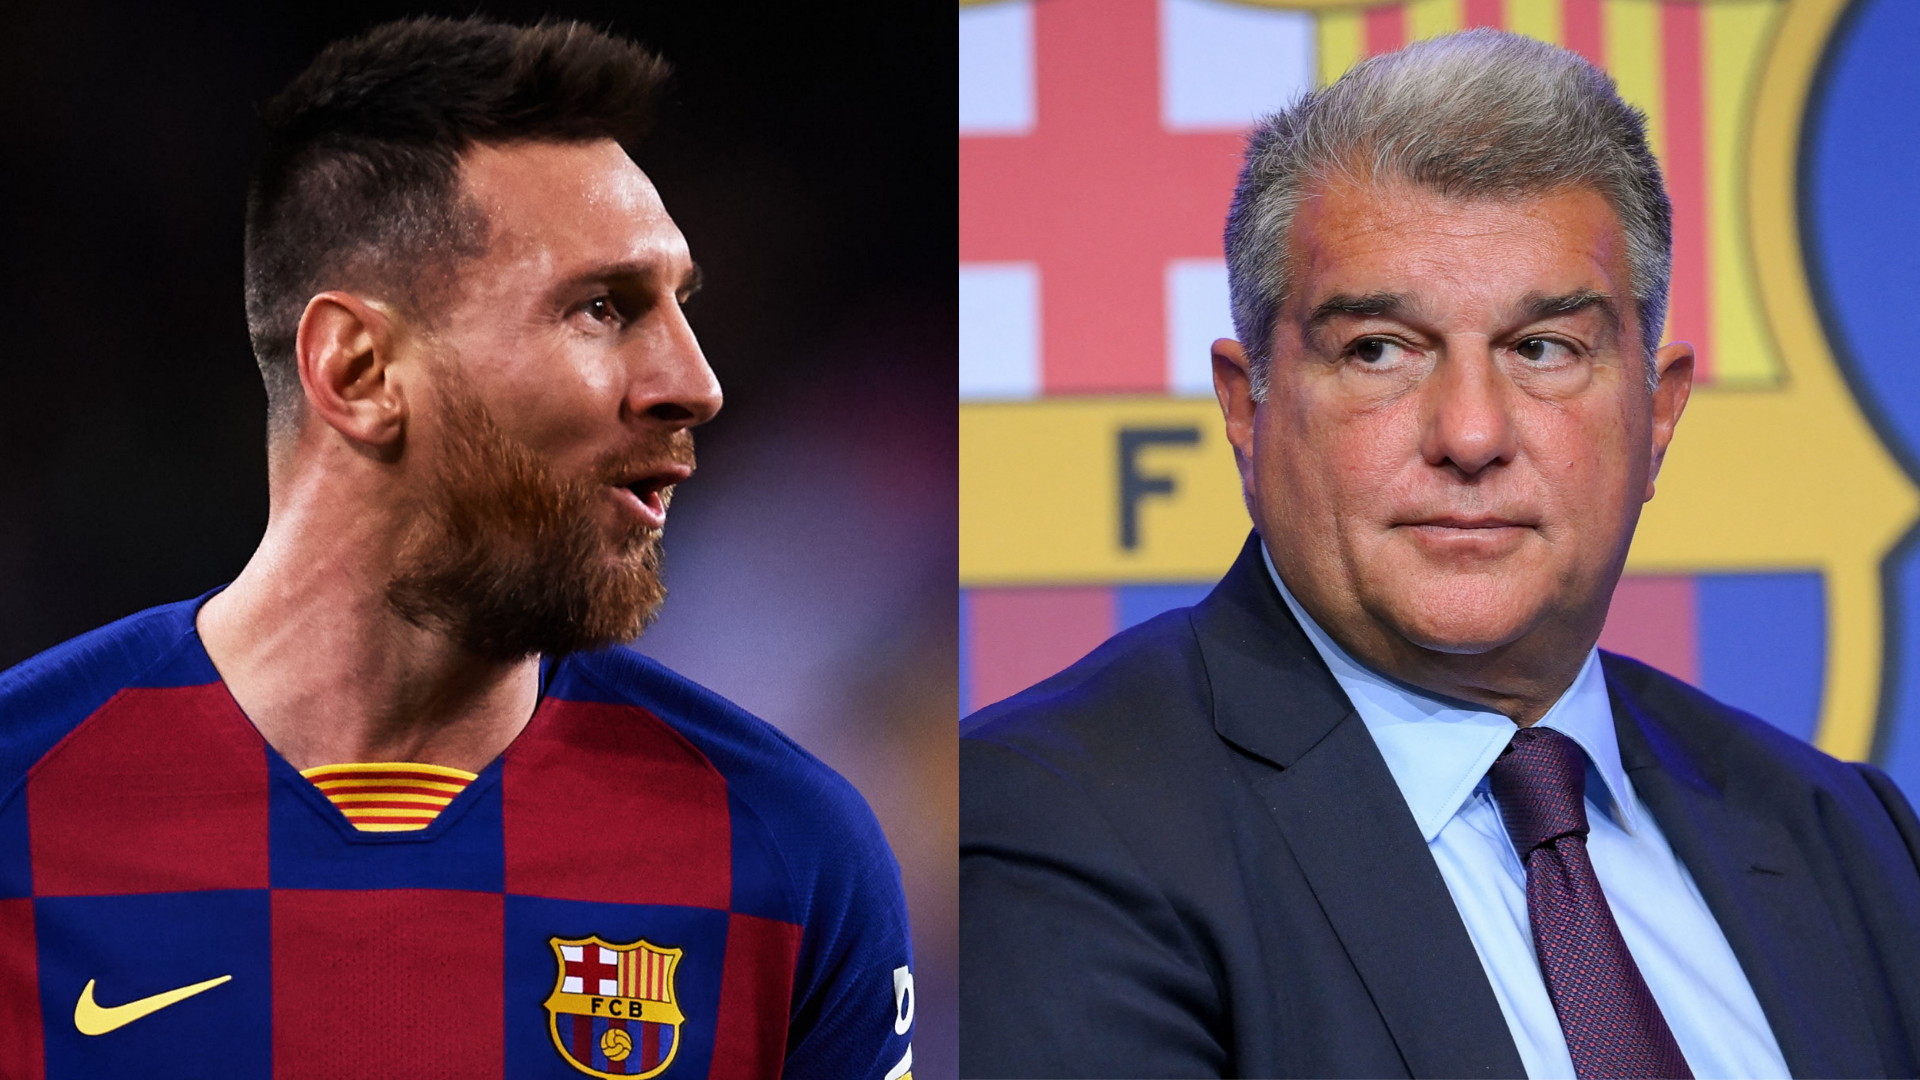 "Eine Farce sondergleichen": Barcelona soll sich nicht ernsthaft um Lionel Messi bemüht haben